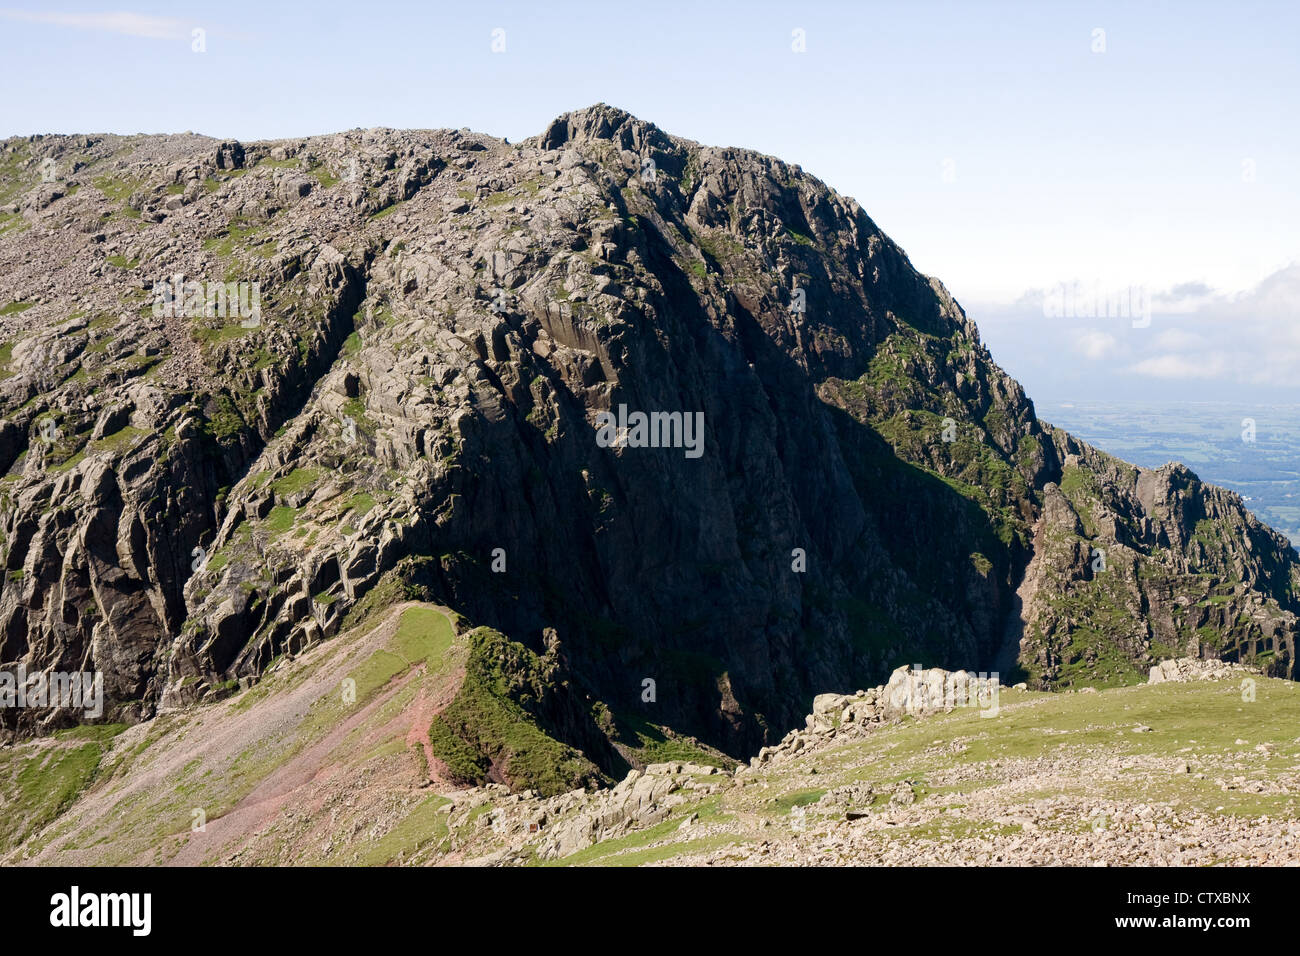 Au coeur de l'Angleterre, deuxième plus haute montagne, vu de Scafell Pike, avec Mickledore séparant les deux montagnes Banque D'Images